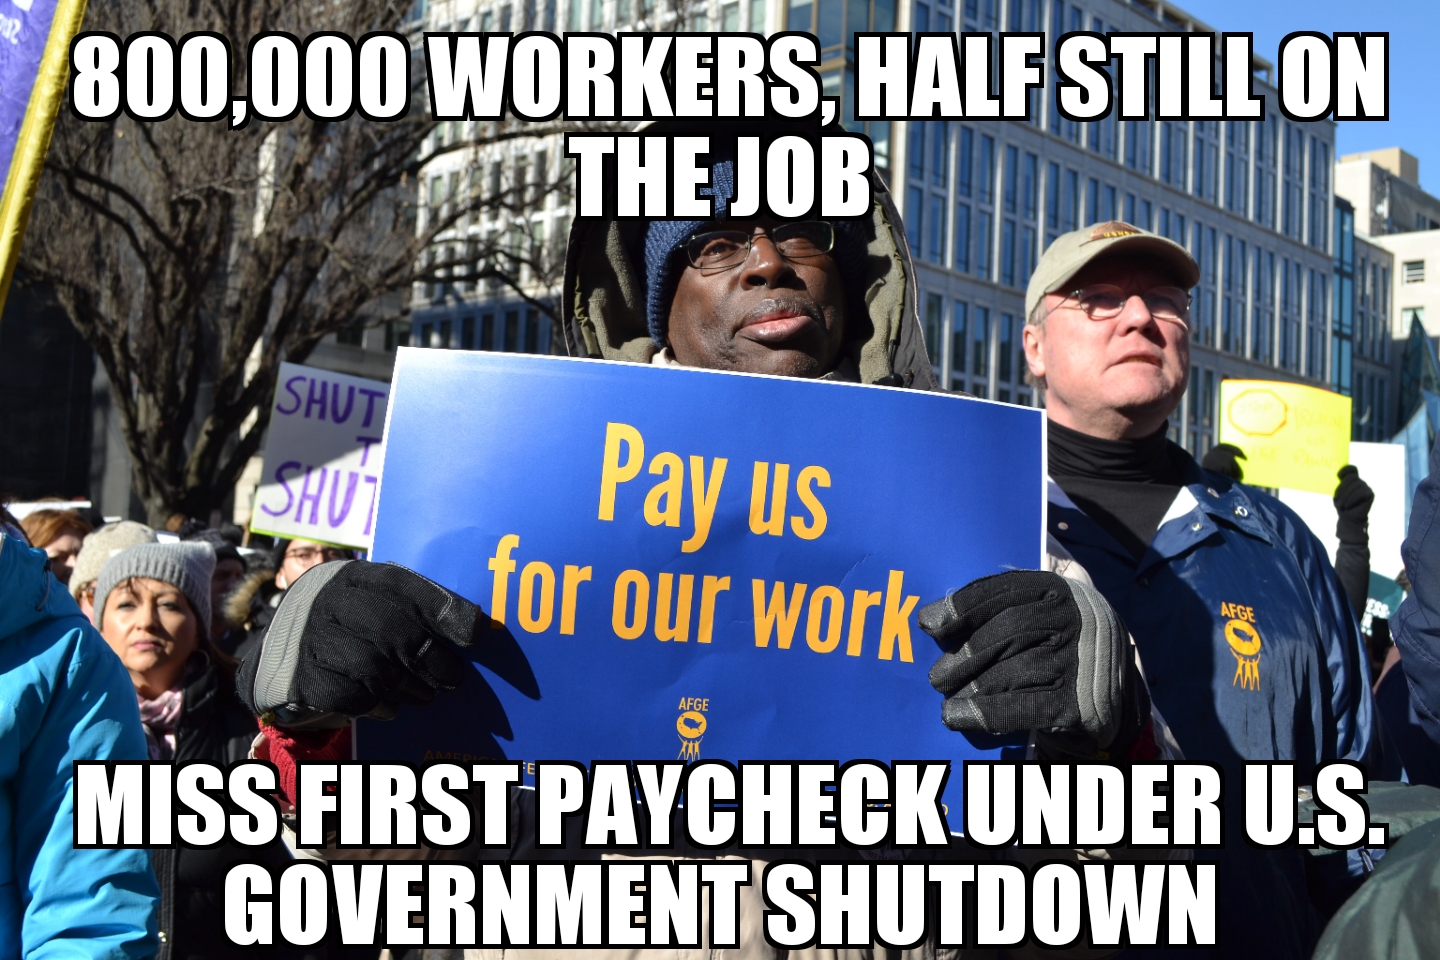 800,000 miss paychecks under government shutdown